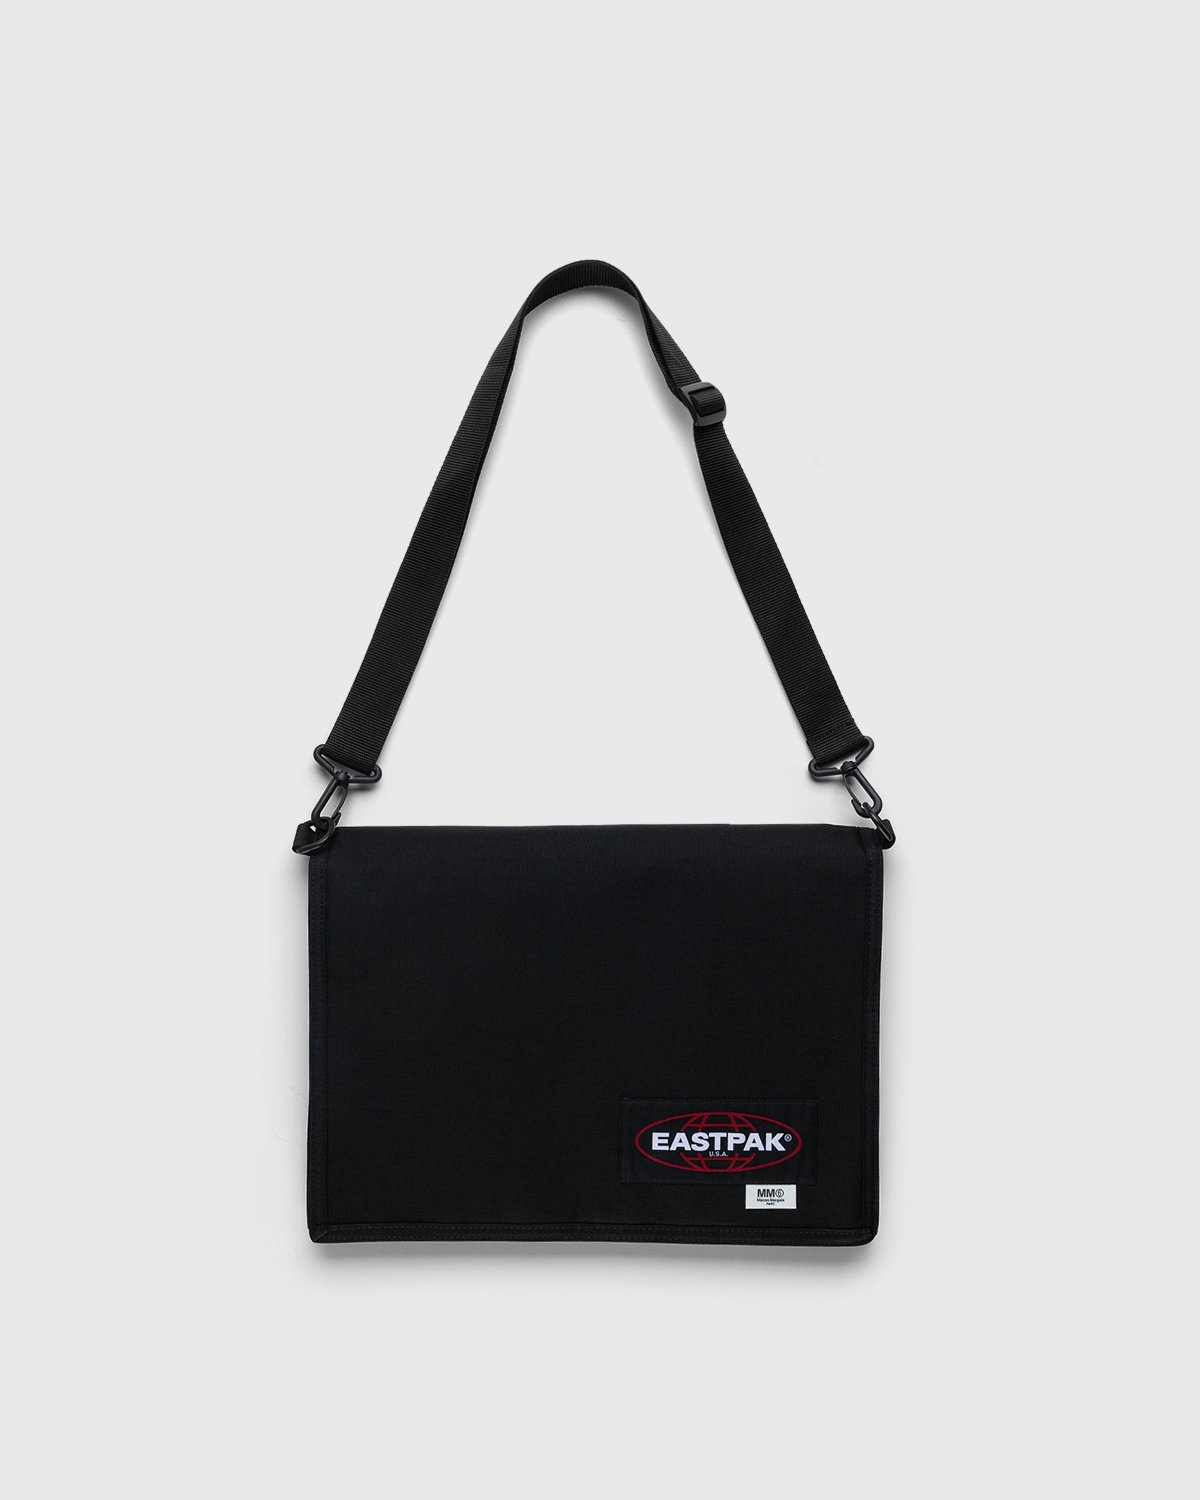 MM6 Maison Margiela x Eastpak – Borsa Tracolla Shoulder Bag Black - Pouches - Black - Image 1